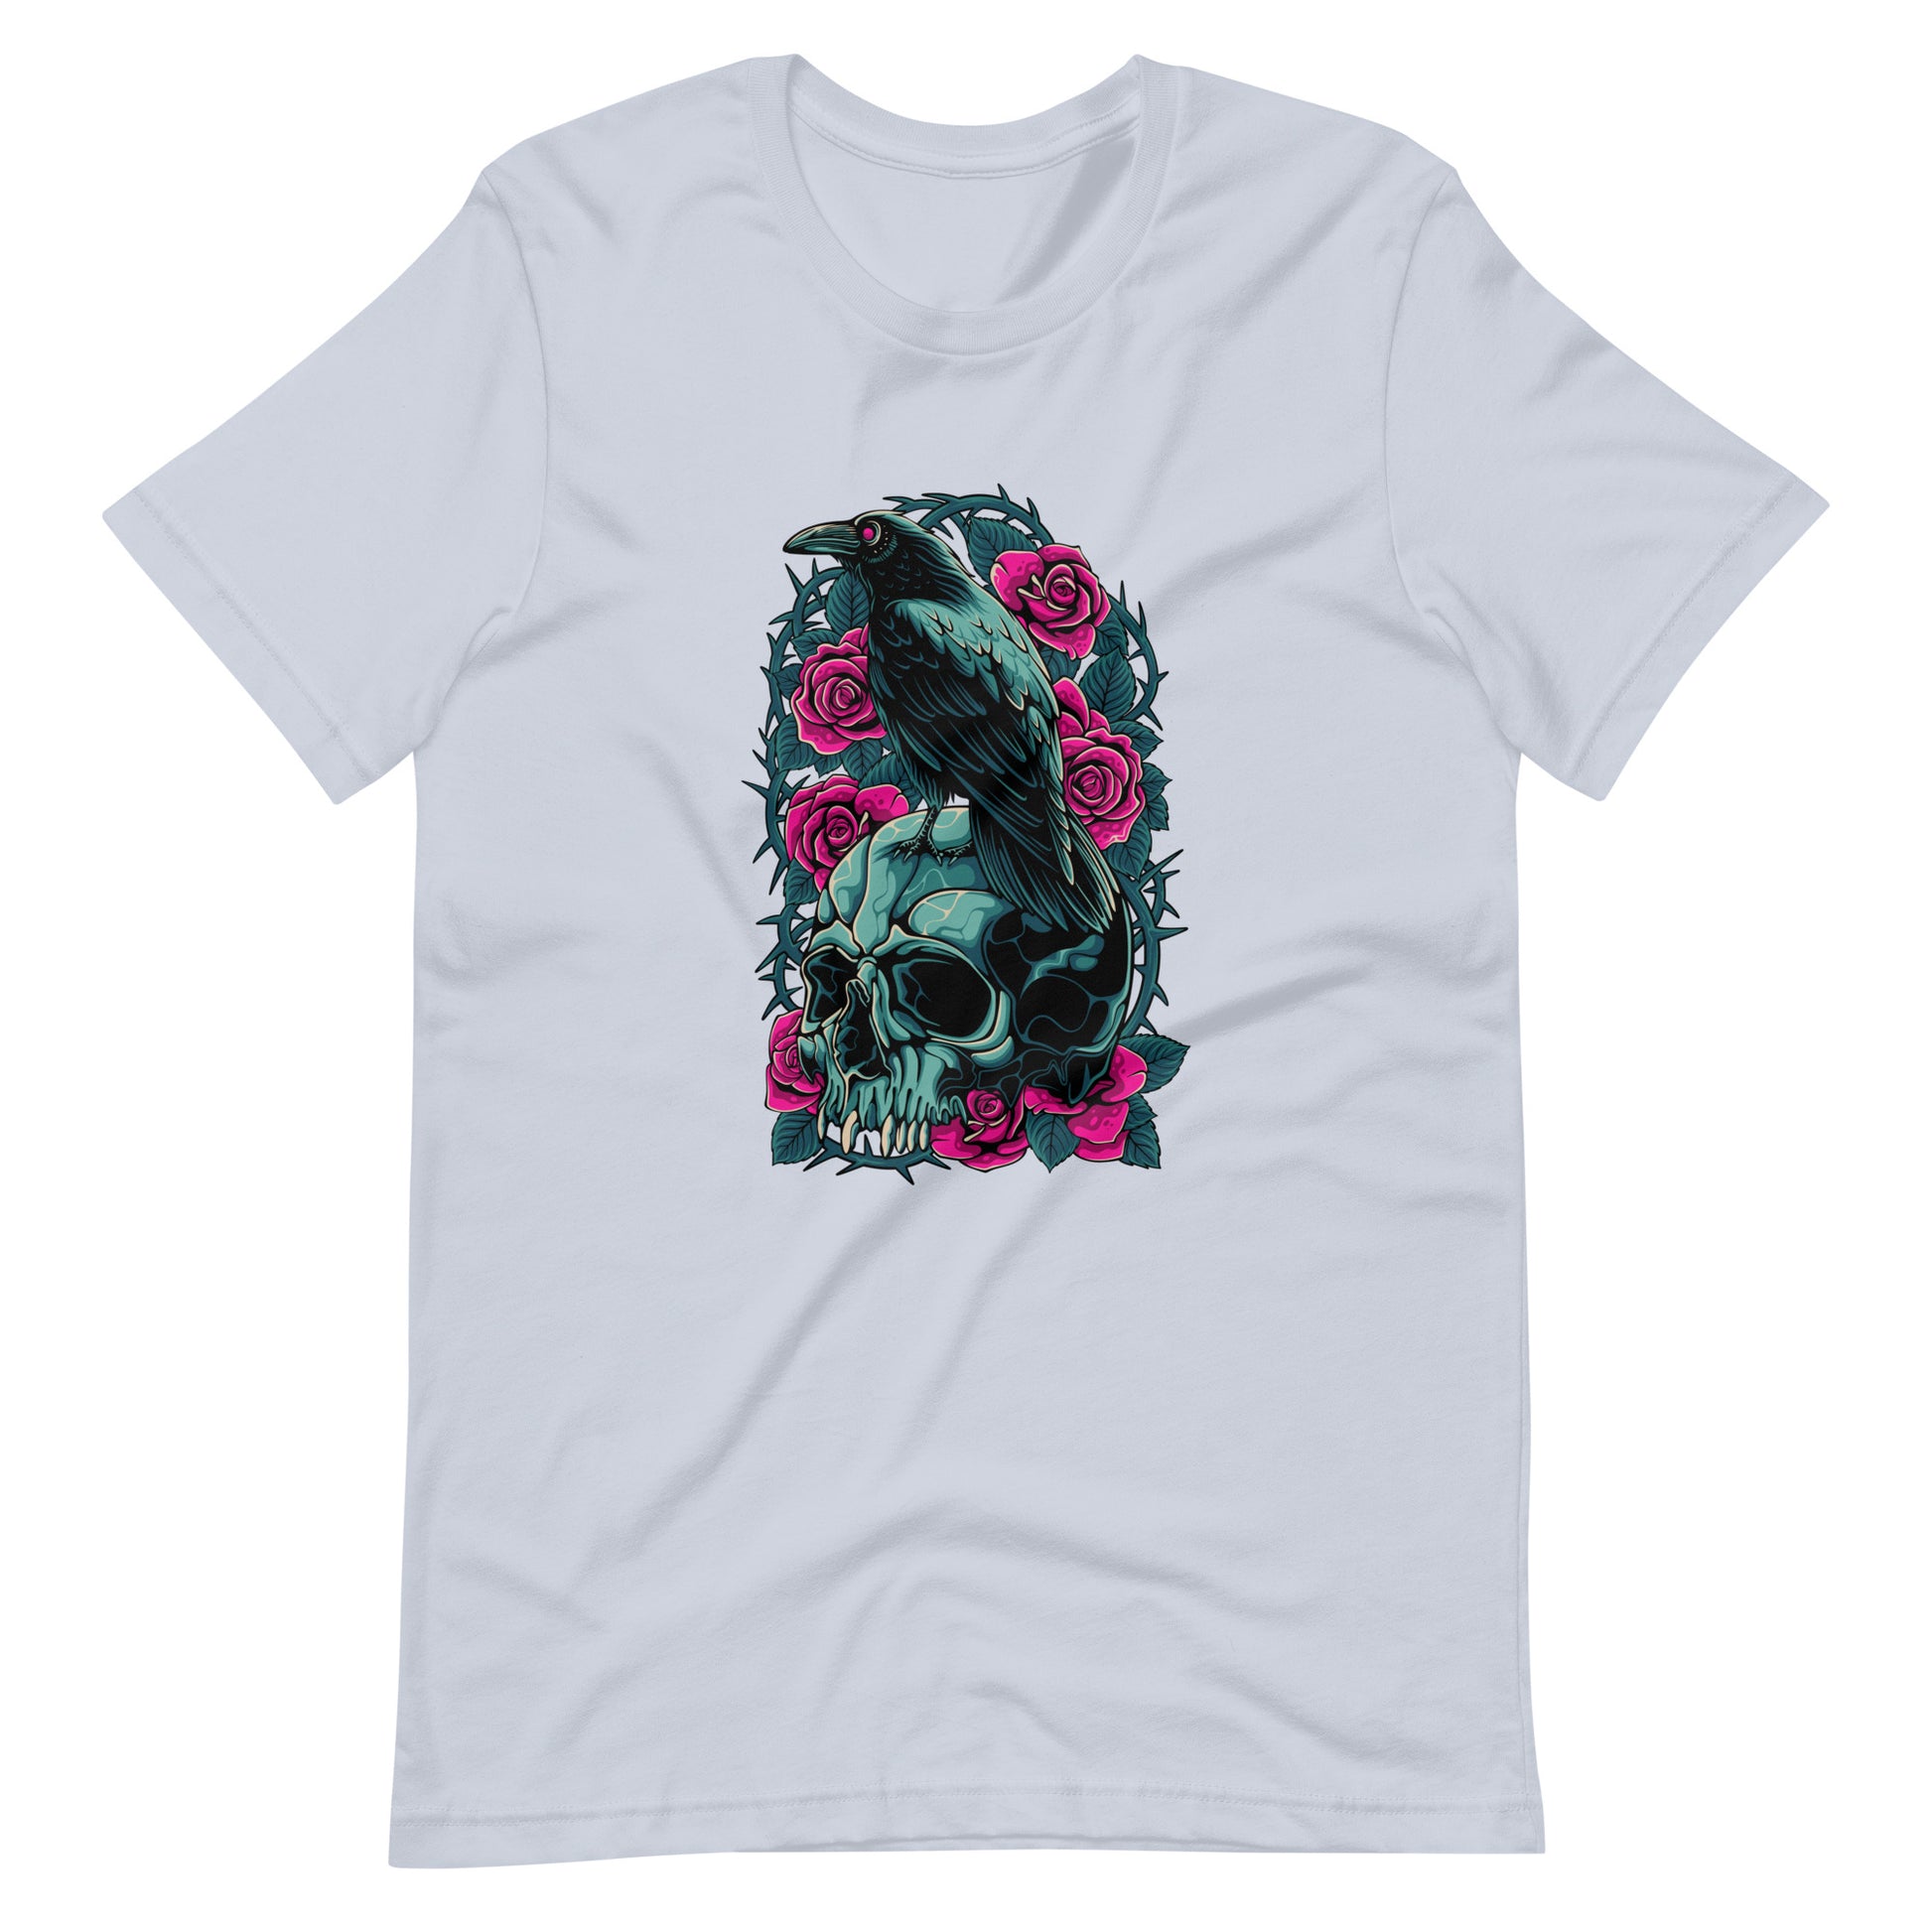 The Raven's Crypt Raven on Skull - Men's t-shirt - Light Blue Front